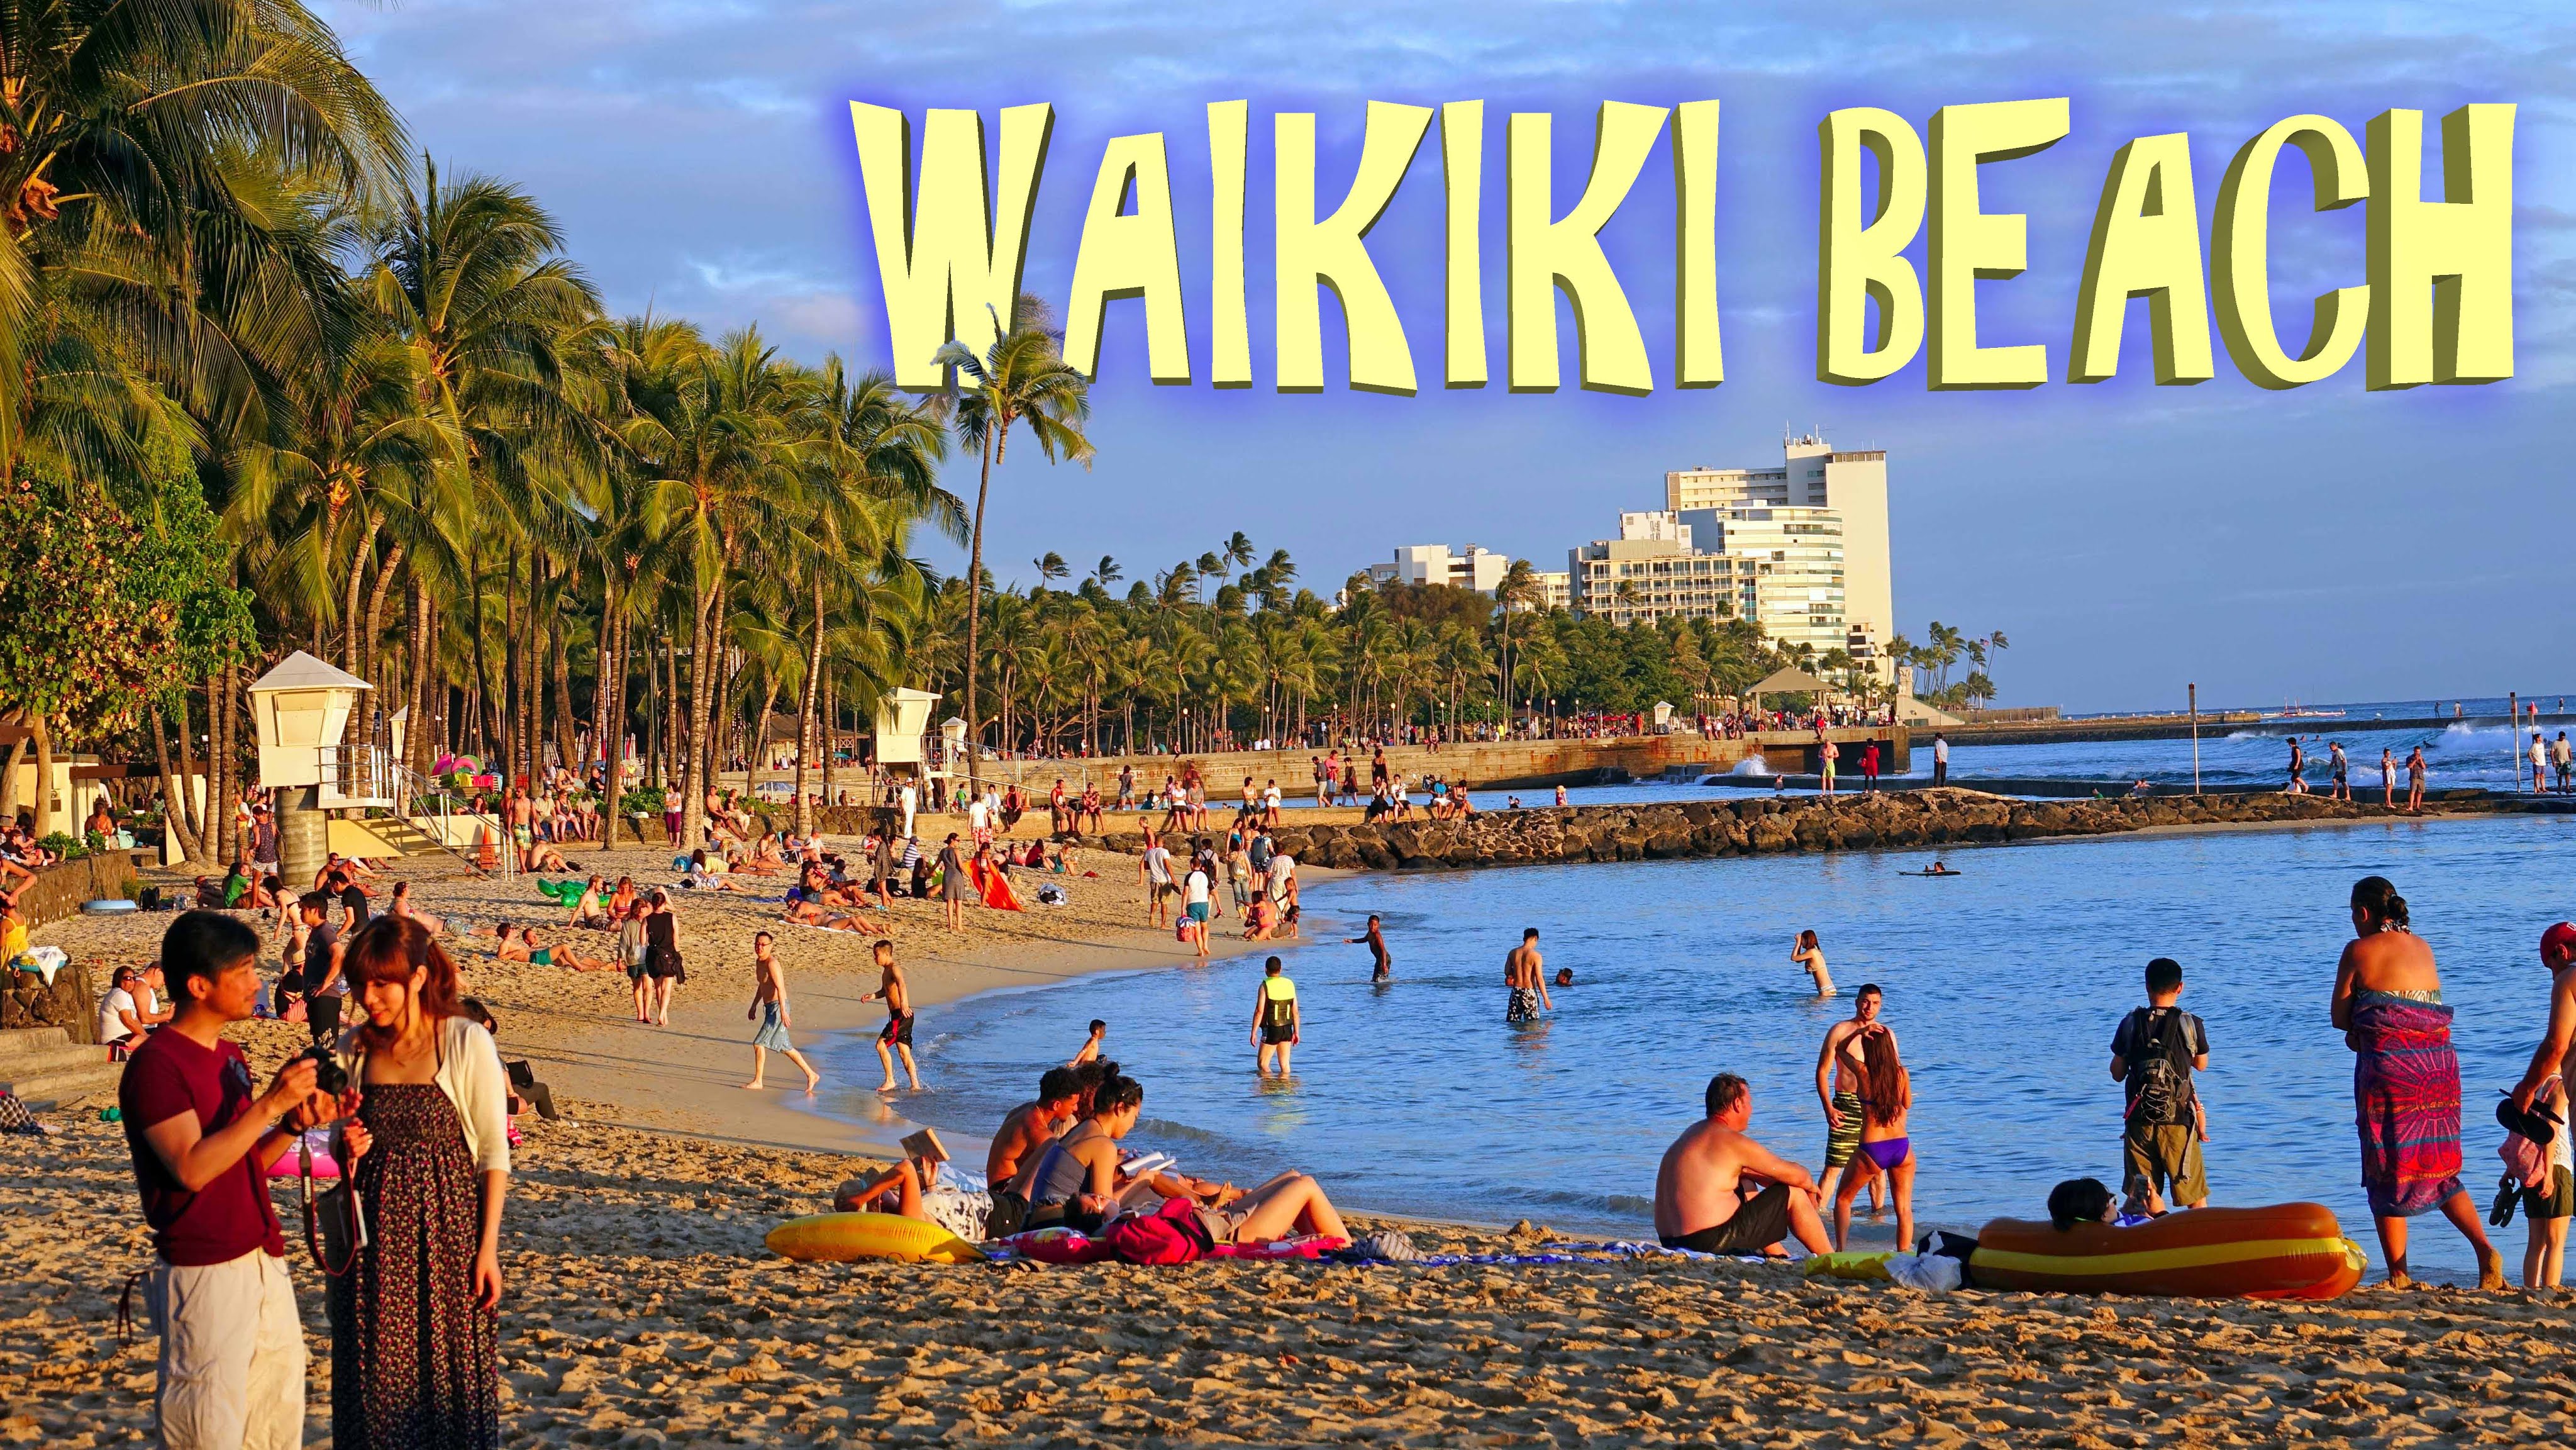 Waikiki Beach - Honolulu 4K - YouTube